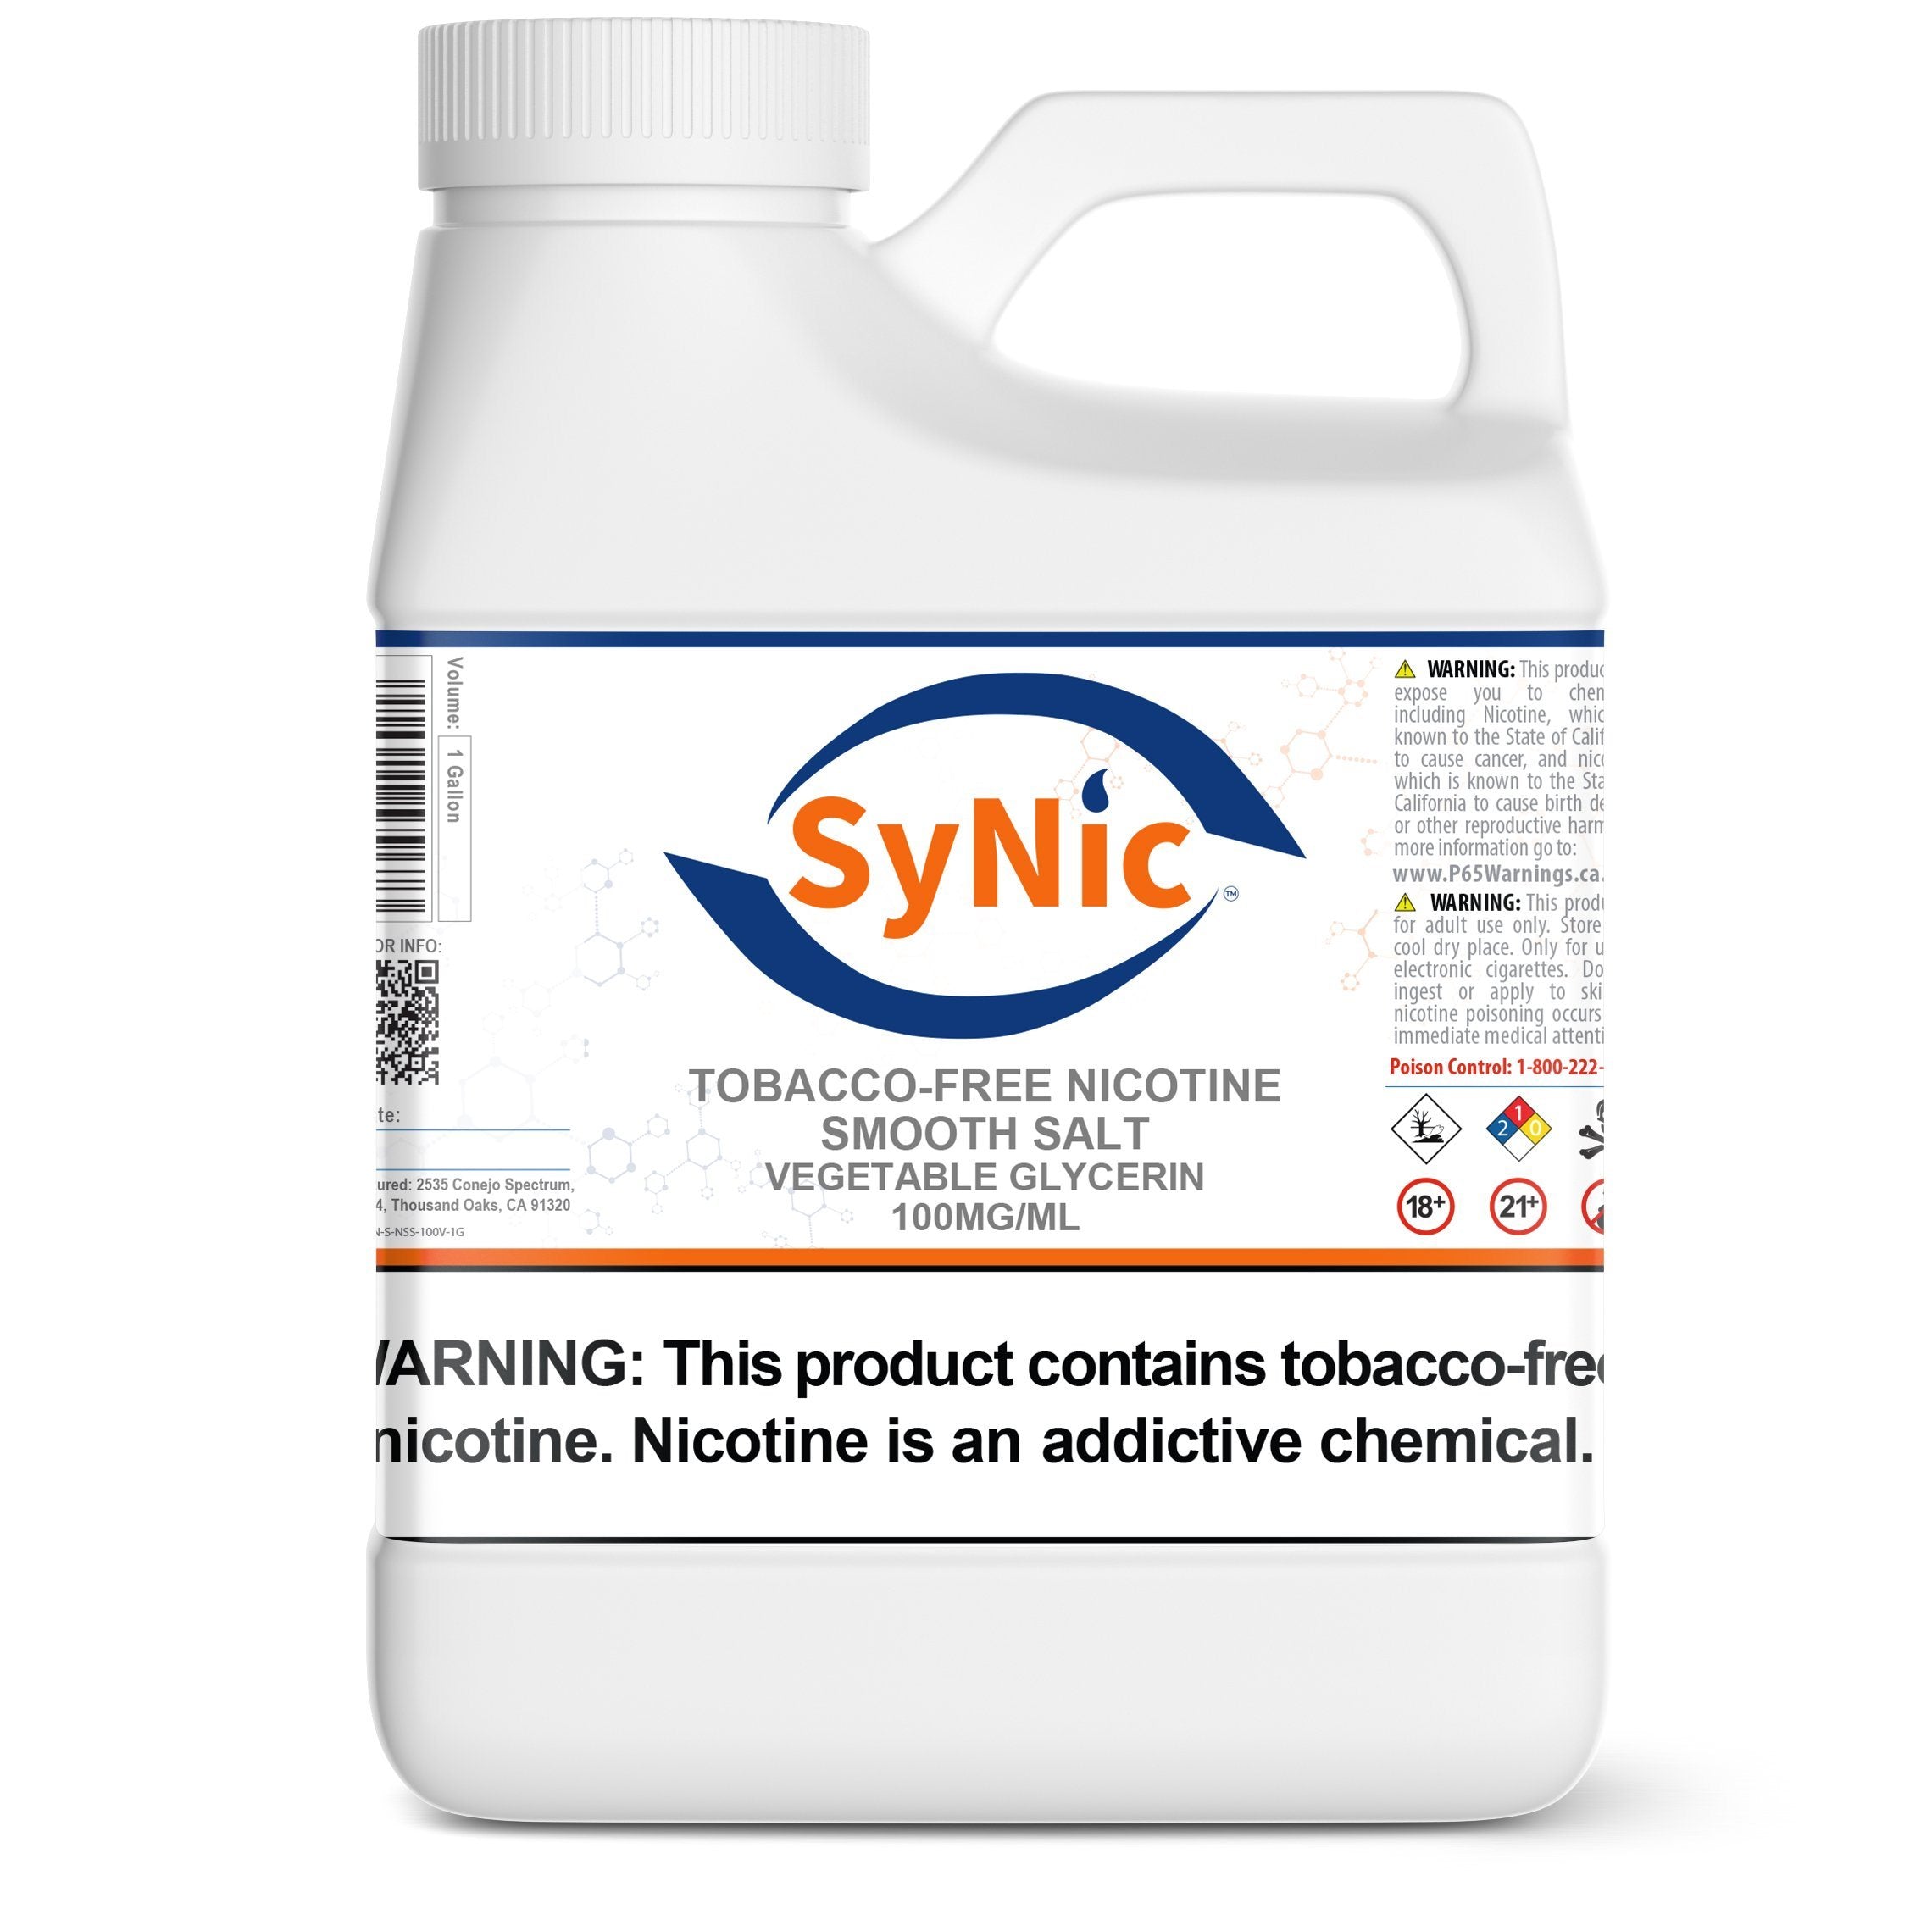 SyNic Smooth Nicotine Salt 100mg/mL